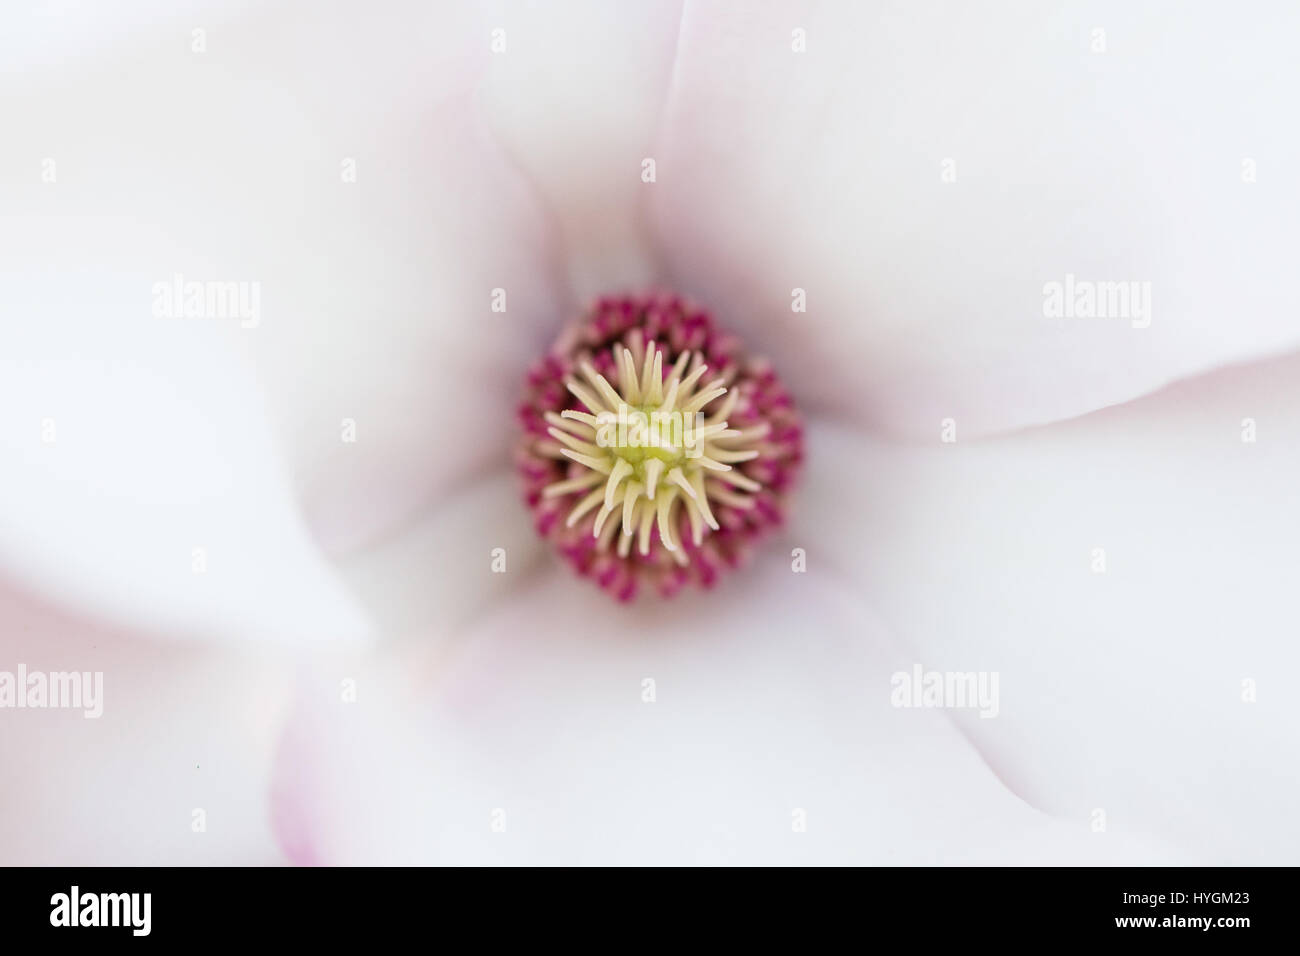 Détail de fleur de magnolia rose Banque D'Images